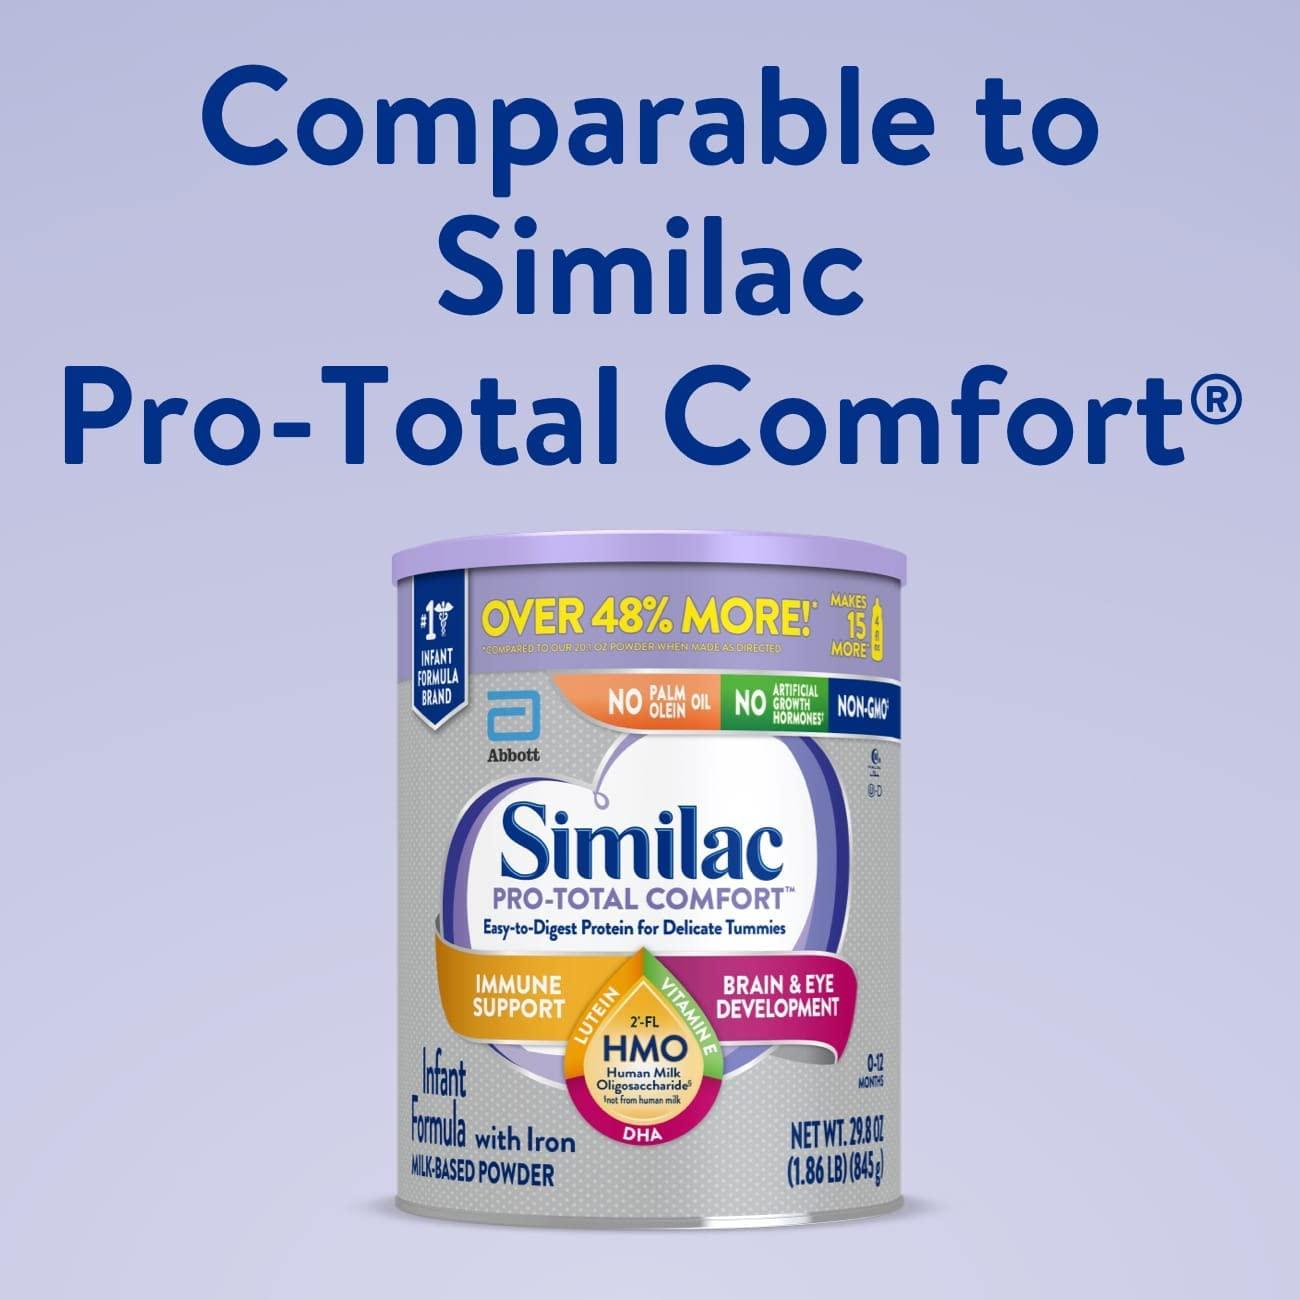 Similac Total Comfort Infant Formula 0-12 months